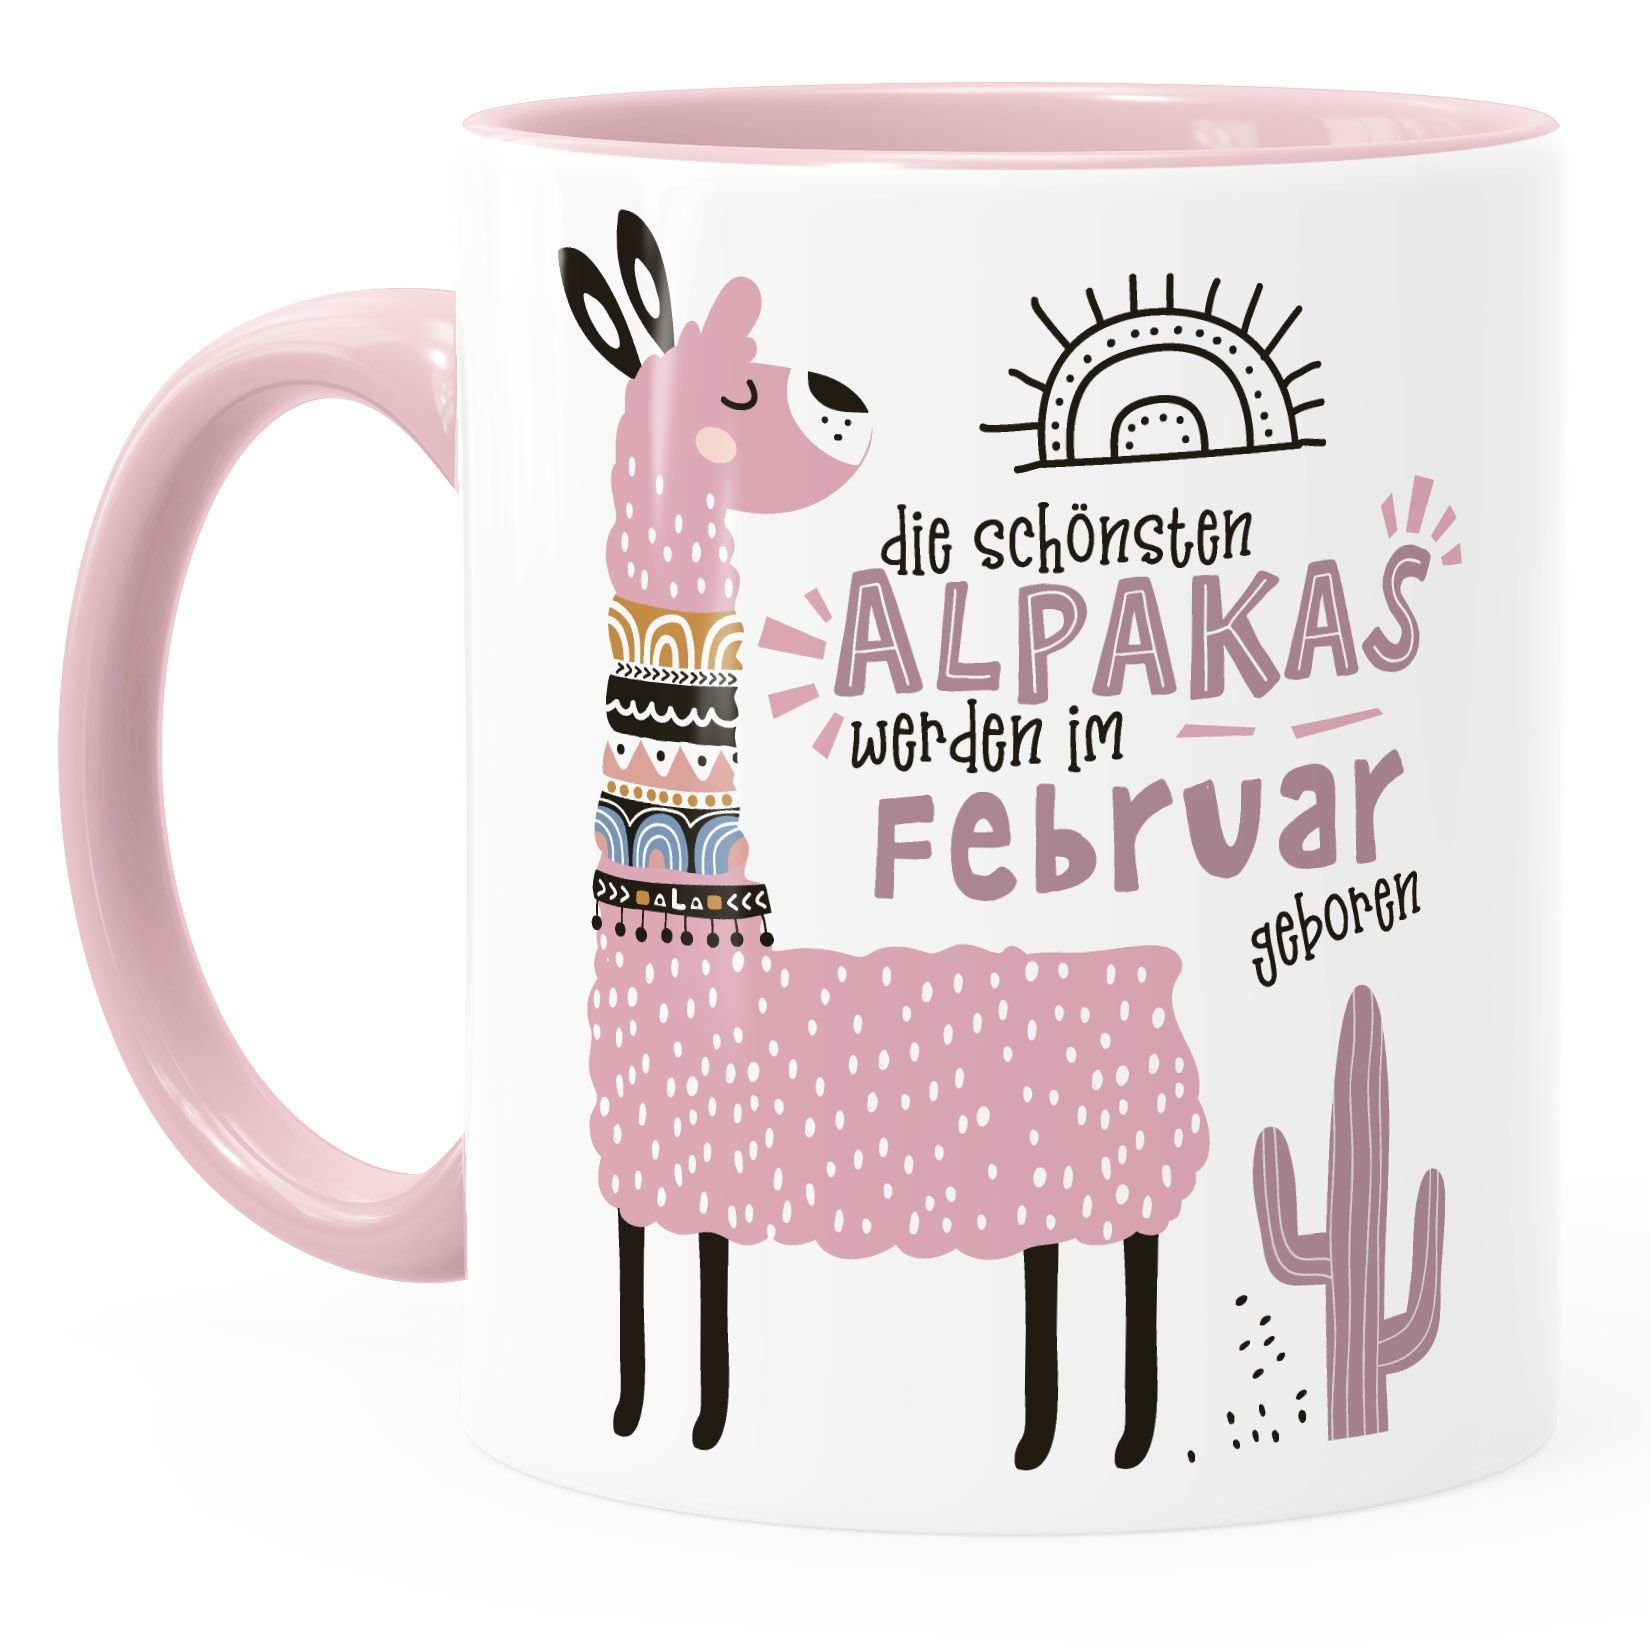 Alpakas Motiv Lama Die Februar Rosa individuelle Geburtsmonat rosa Geburtags-Geschenke Schönsten im Tasse werden Keramik geboren SpecialMe®, Kaffee-Tasse Januar-Dezember SpecialMe anpassbares